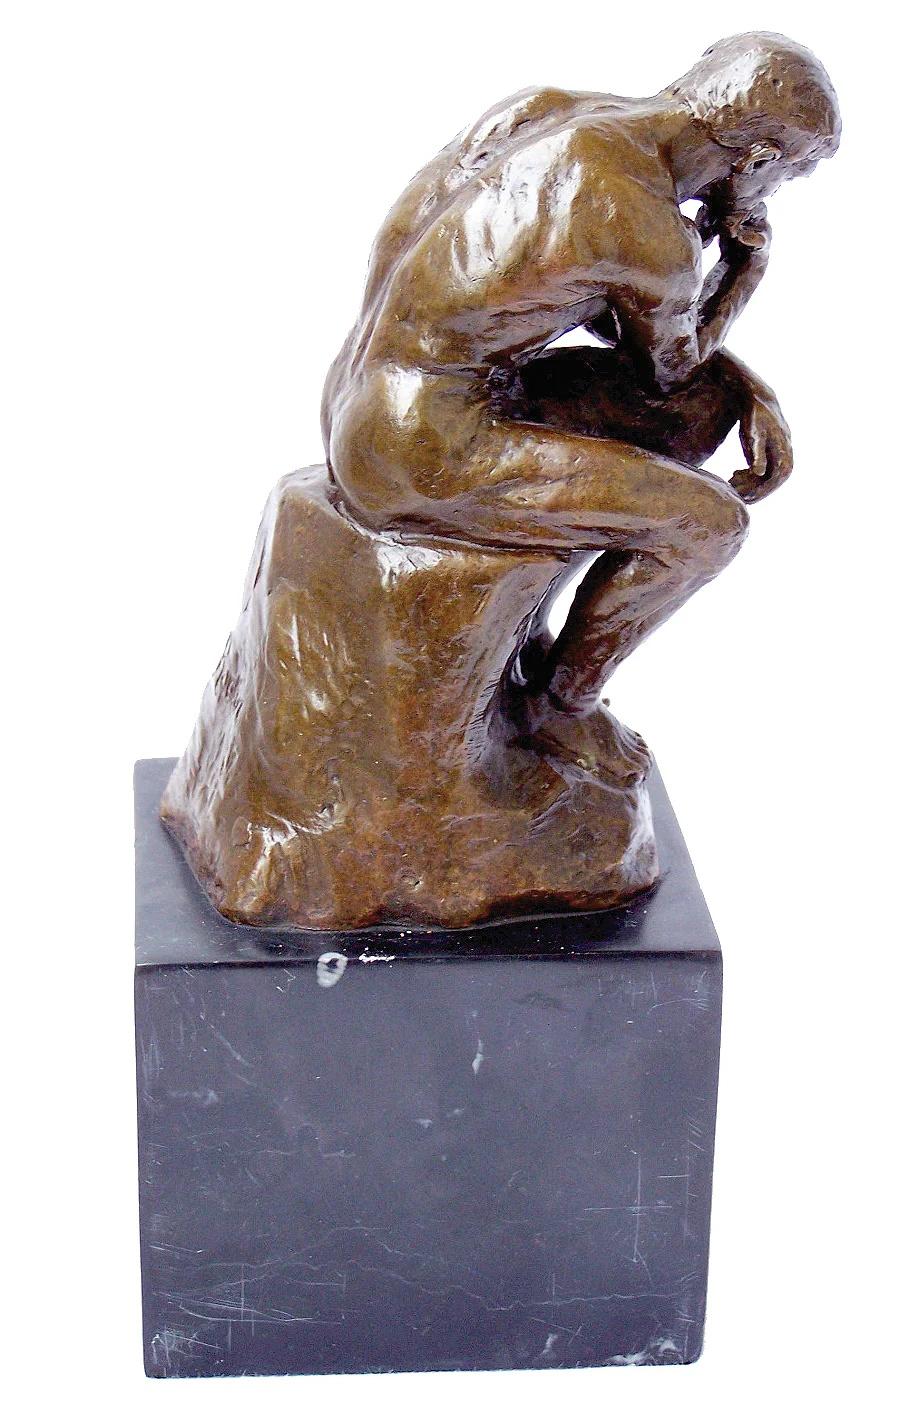 Skulptur, Bronze mit brauner Patina, die den Denker darstellt, Modell von Auguste Rodin, XXI. Jahrhundert.

B: 17,5cm, H: 19,5cm, T: 10cm